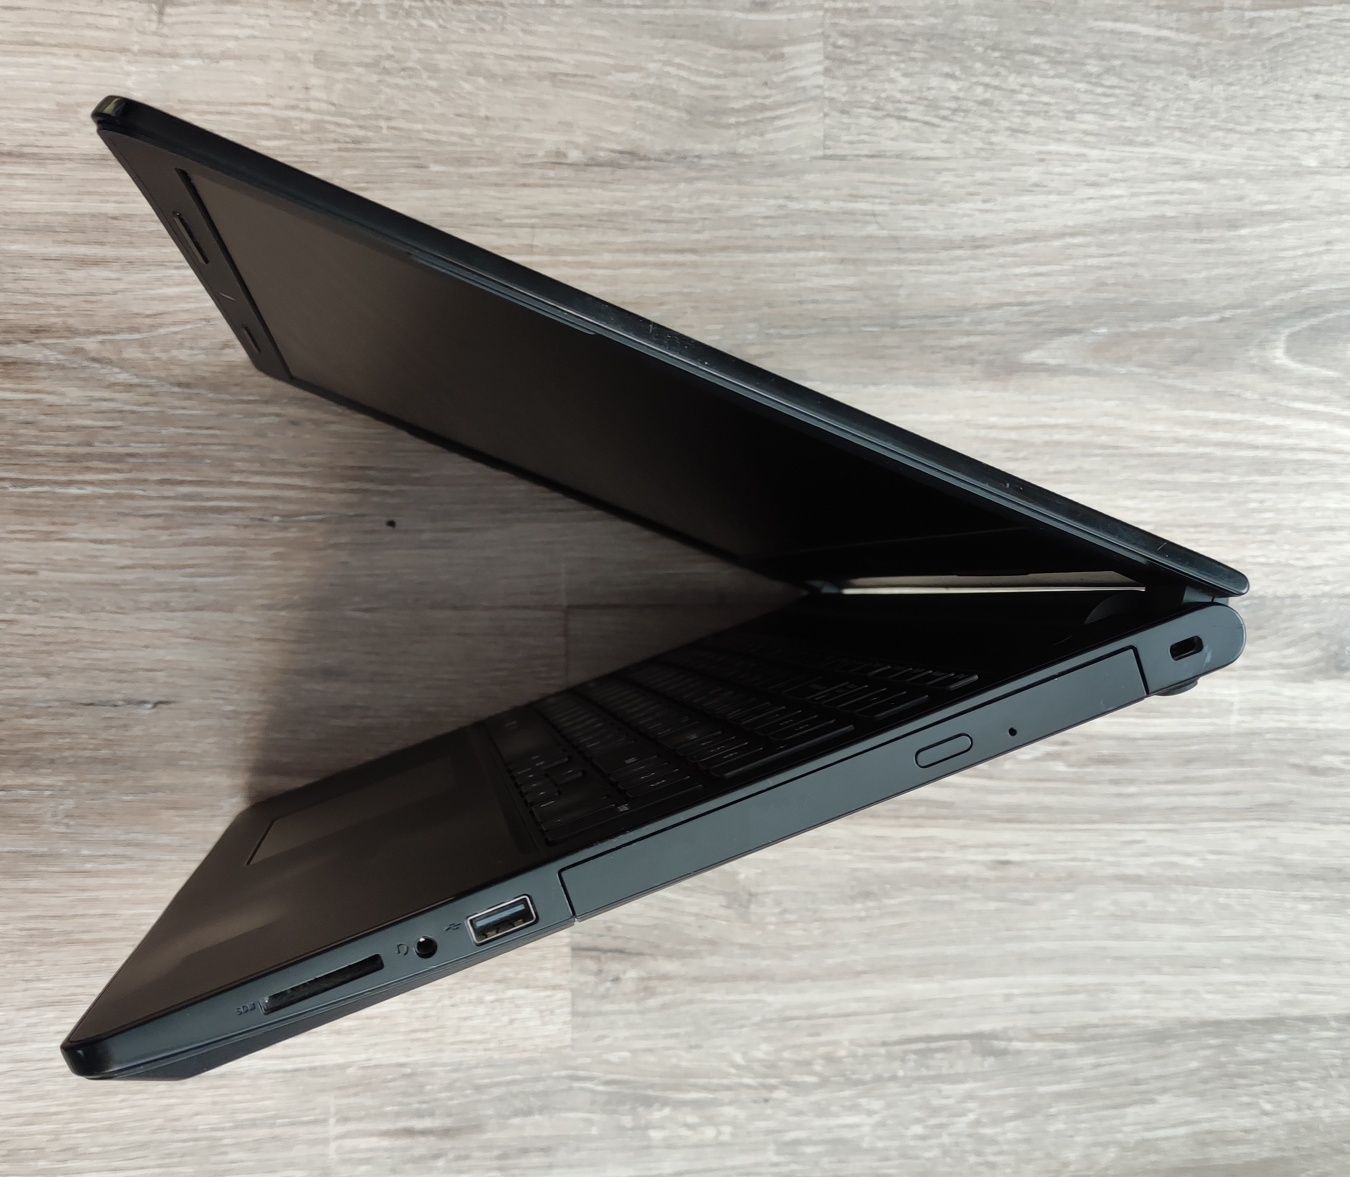 Продам ігровий ноутбук Dell inspiron 15 3575 i5/8Gb/Radeon 520 2Gb